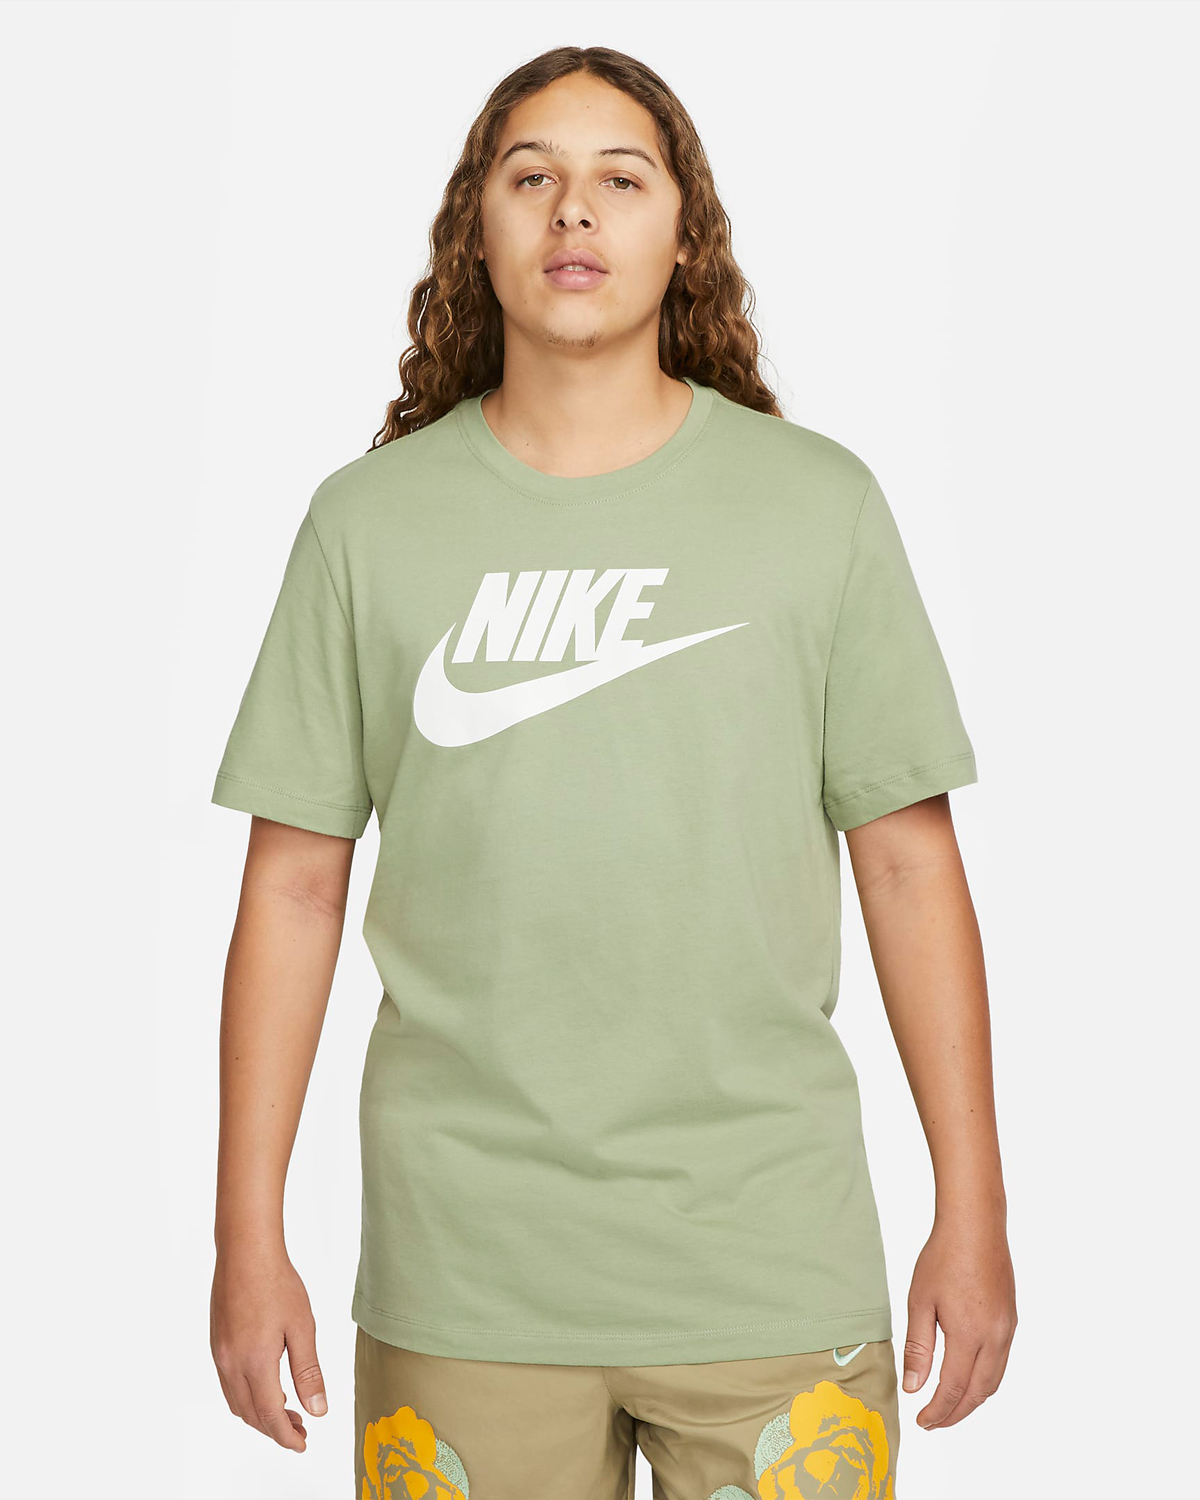 Nike-Sportswear-Oil-Green-T-Shirt